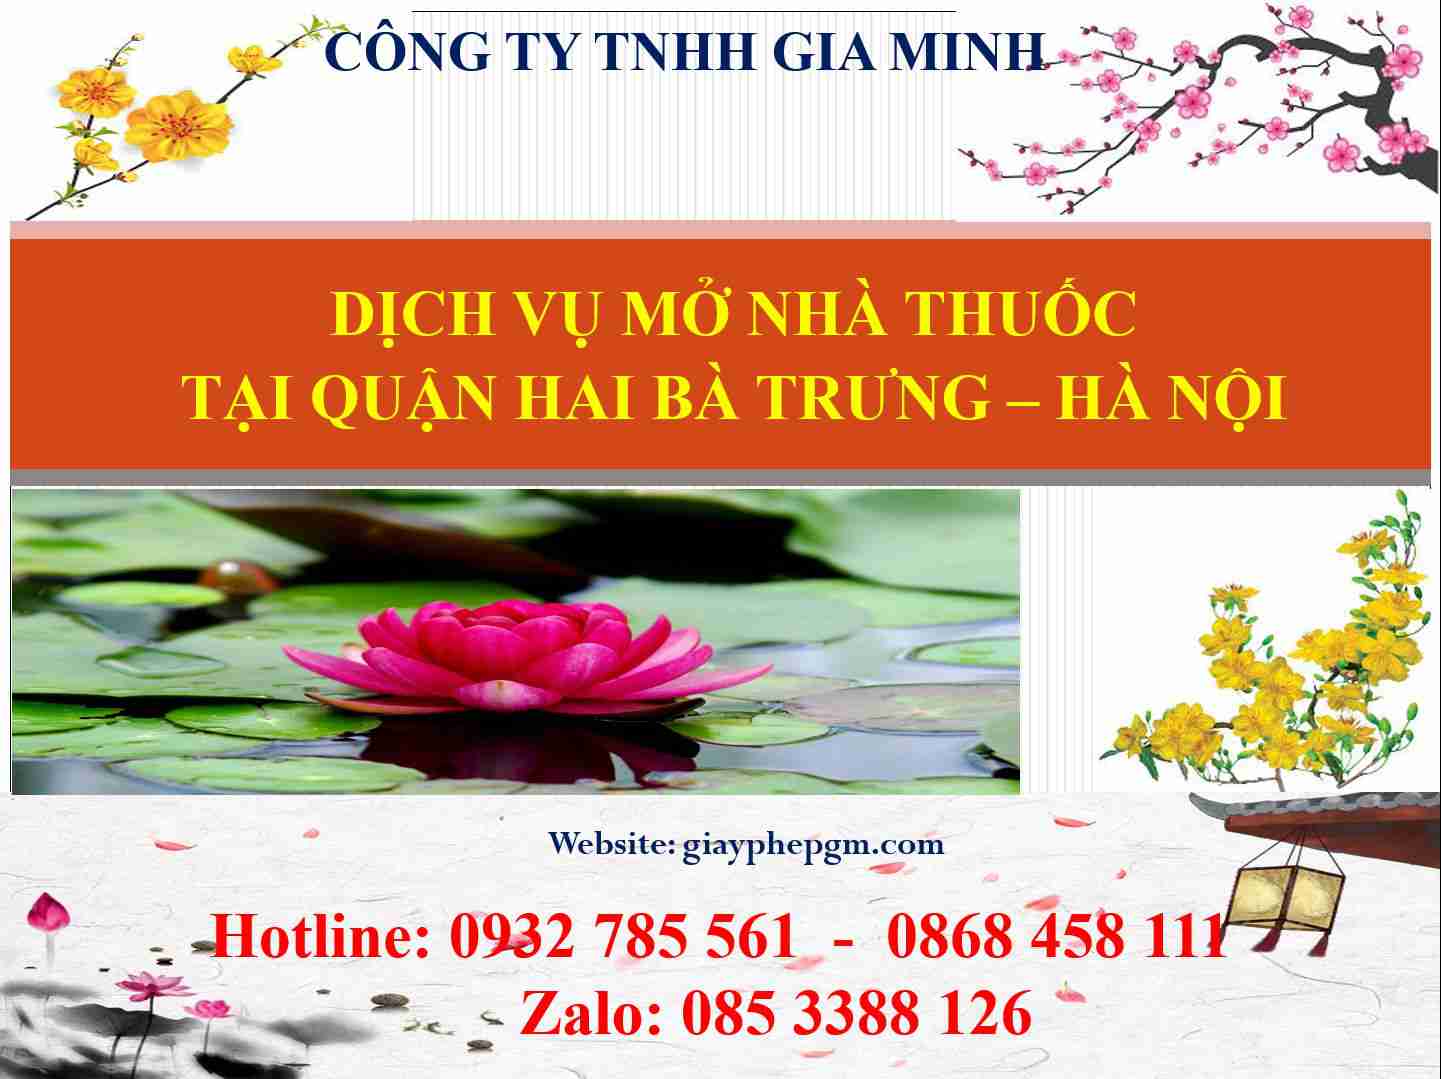 Dịch vụ mở nhà thuốc tại Quận Hai Bà Trưng - Hà Nội